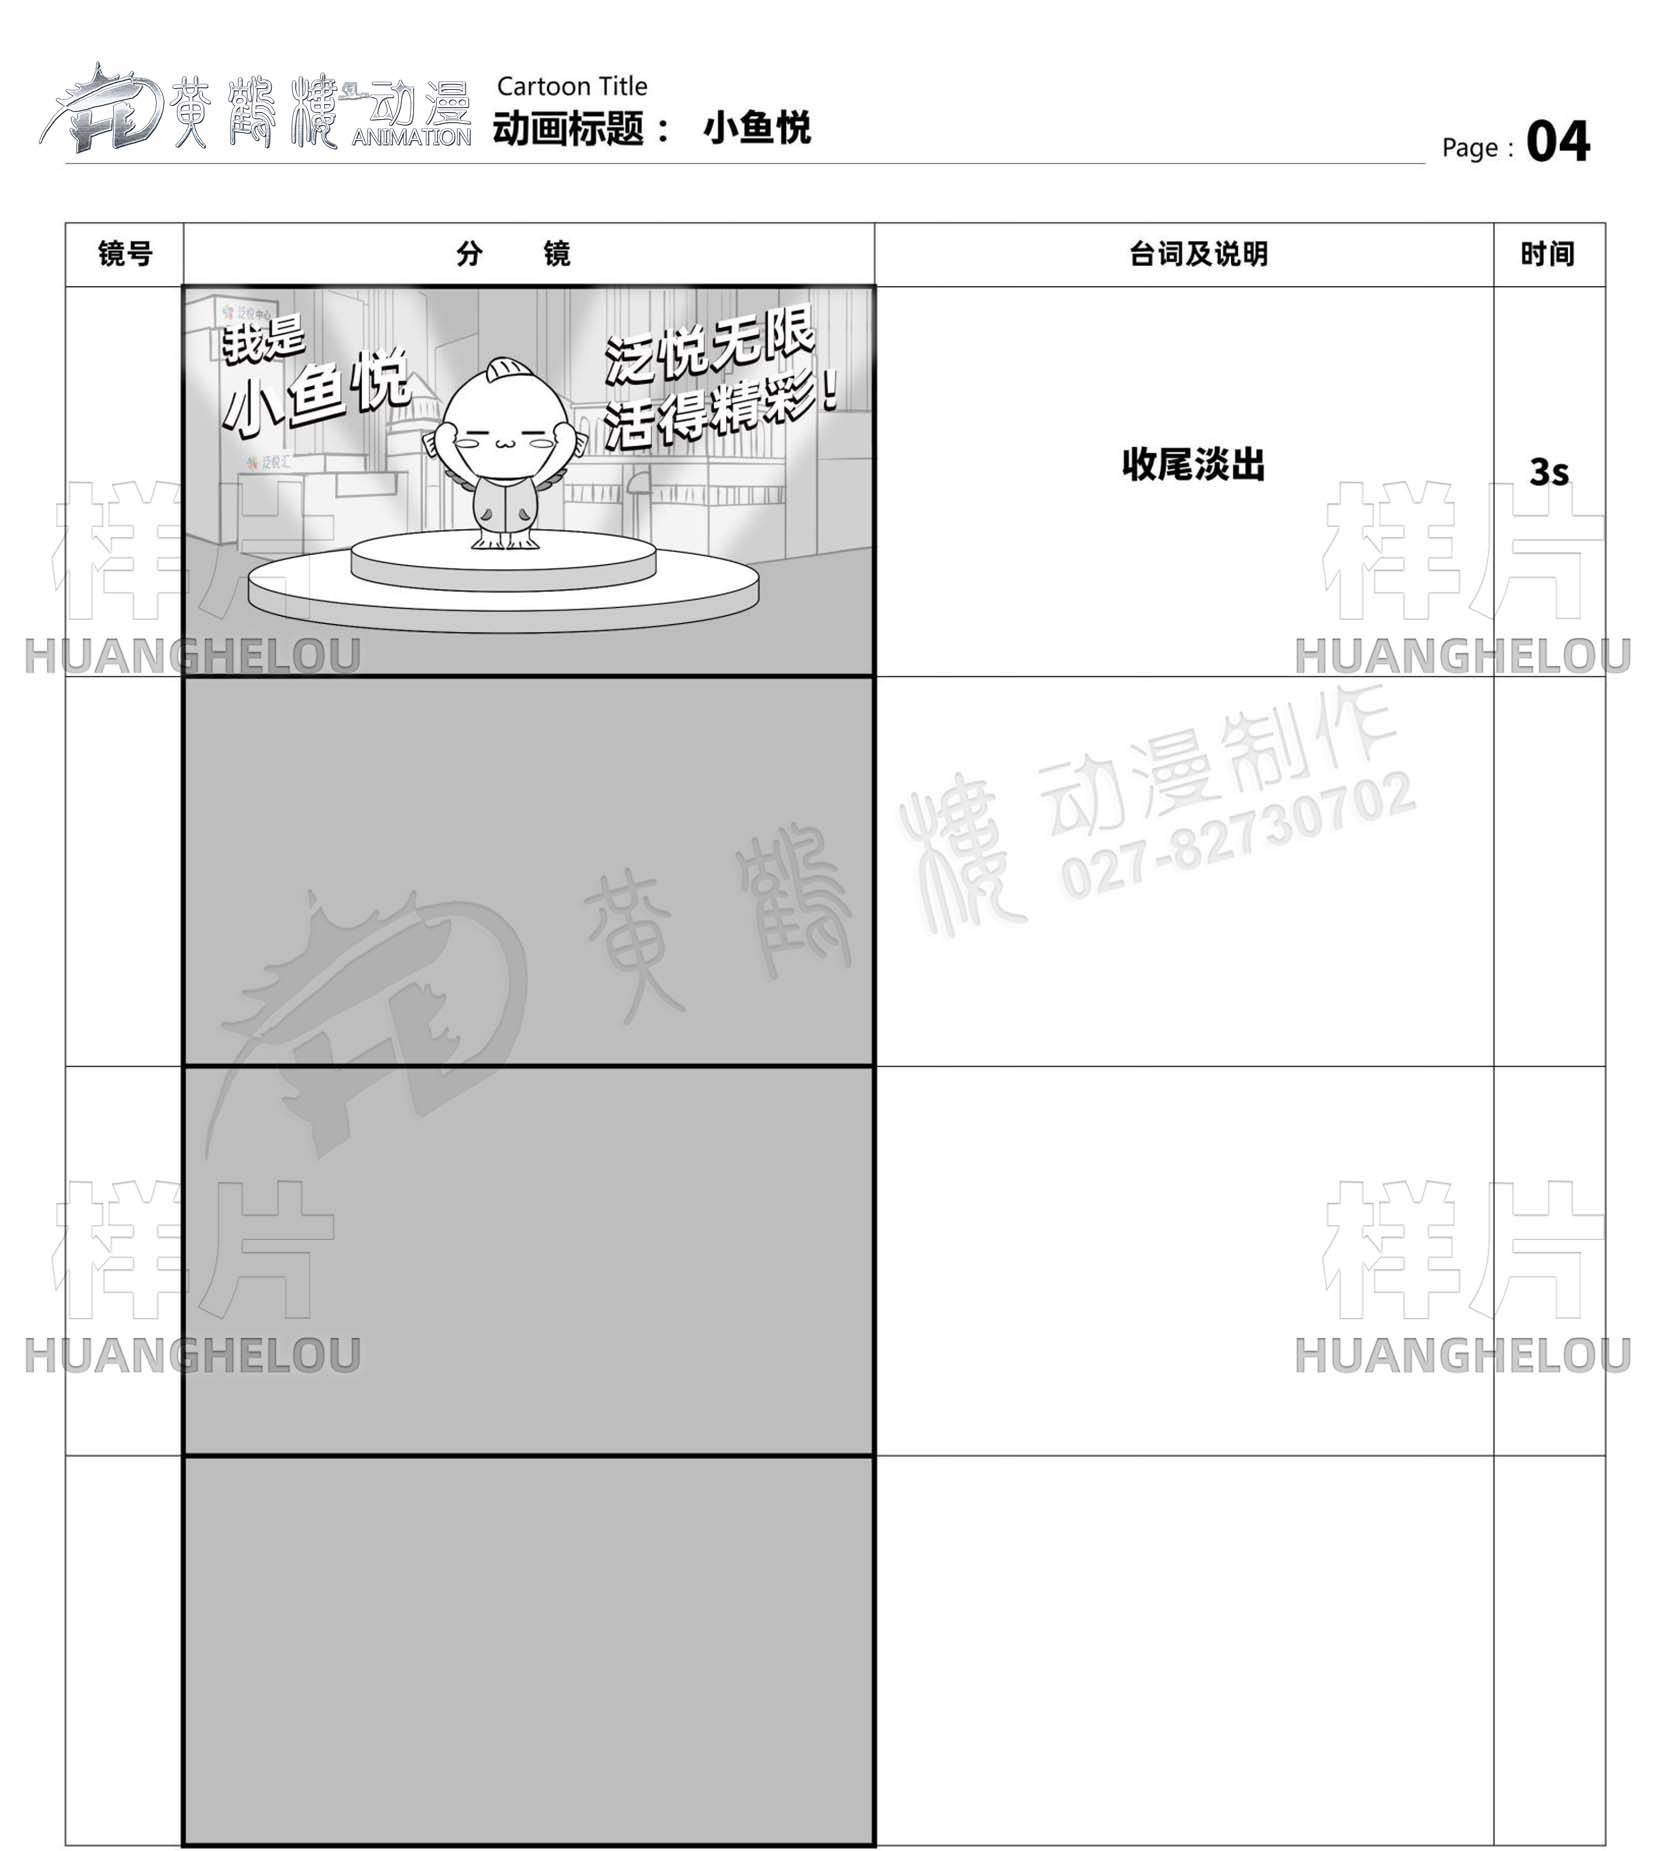 中国电建地产集团《小鱼悦》动漫IP形象面世分镜设计04.jpg